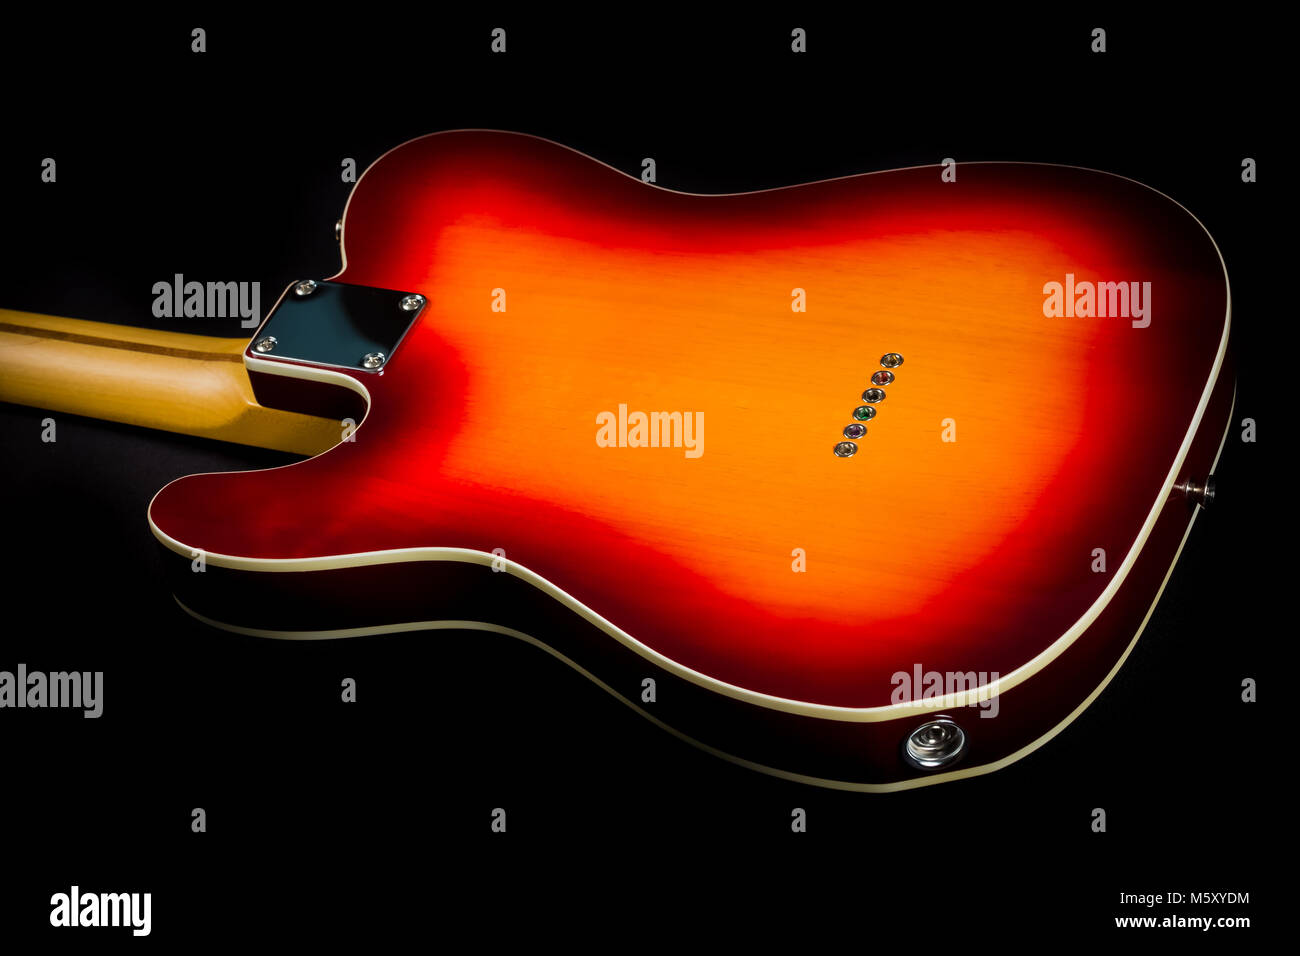 De près de l'arrière d'une guitare électrique avec un carton jaune et orange peinture sunburst Banque D'Images